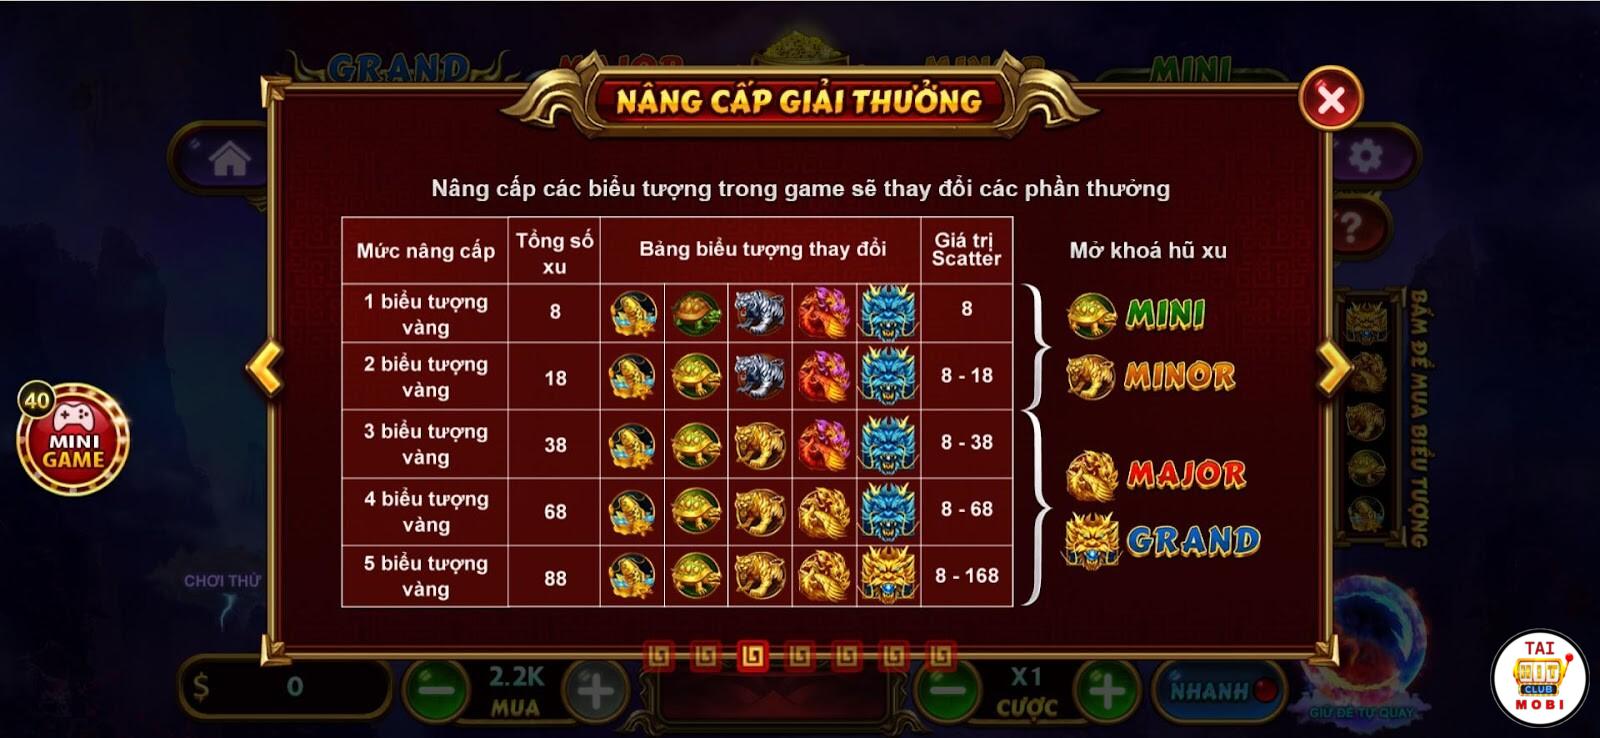 Một số cách nâng cấp hũ trong game Kho Báu Tứ Linh online 